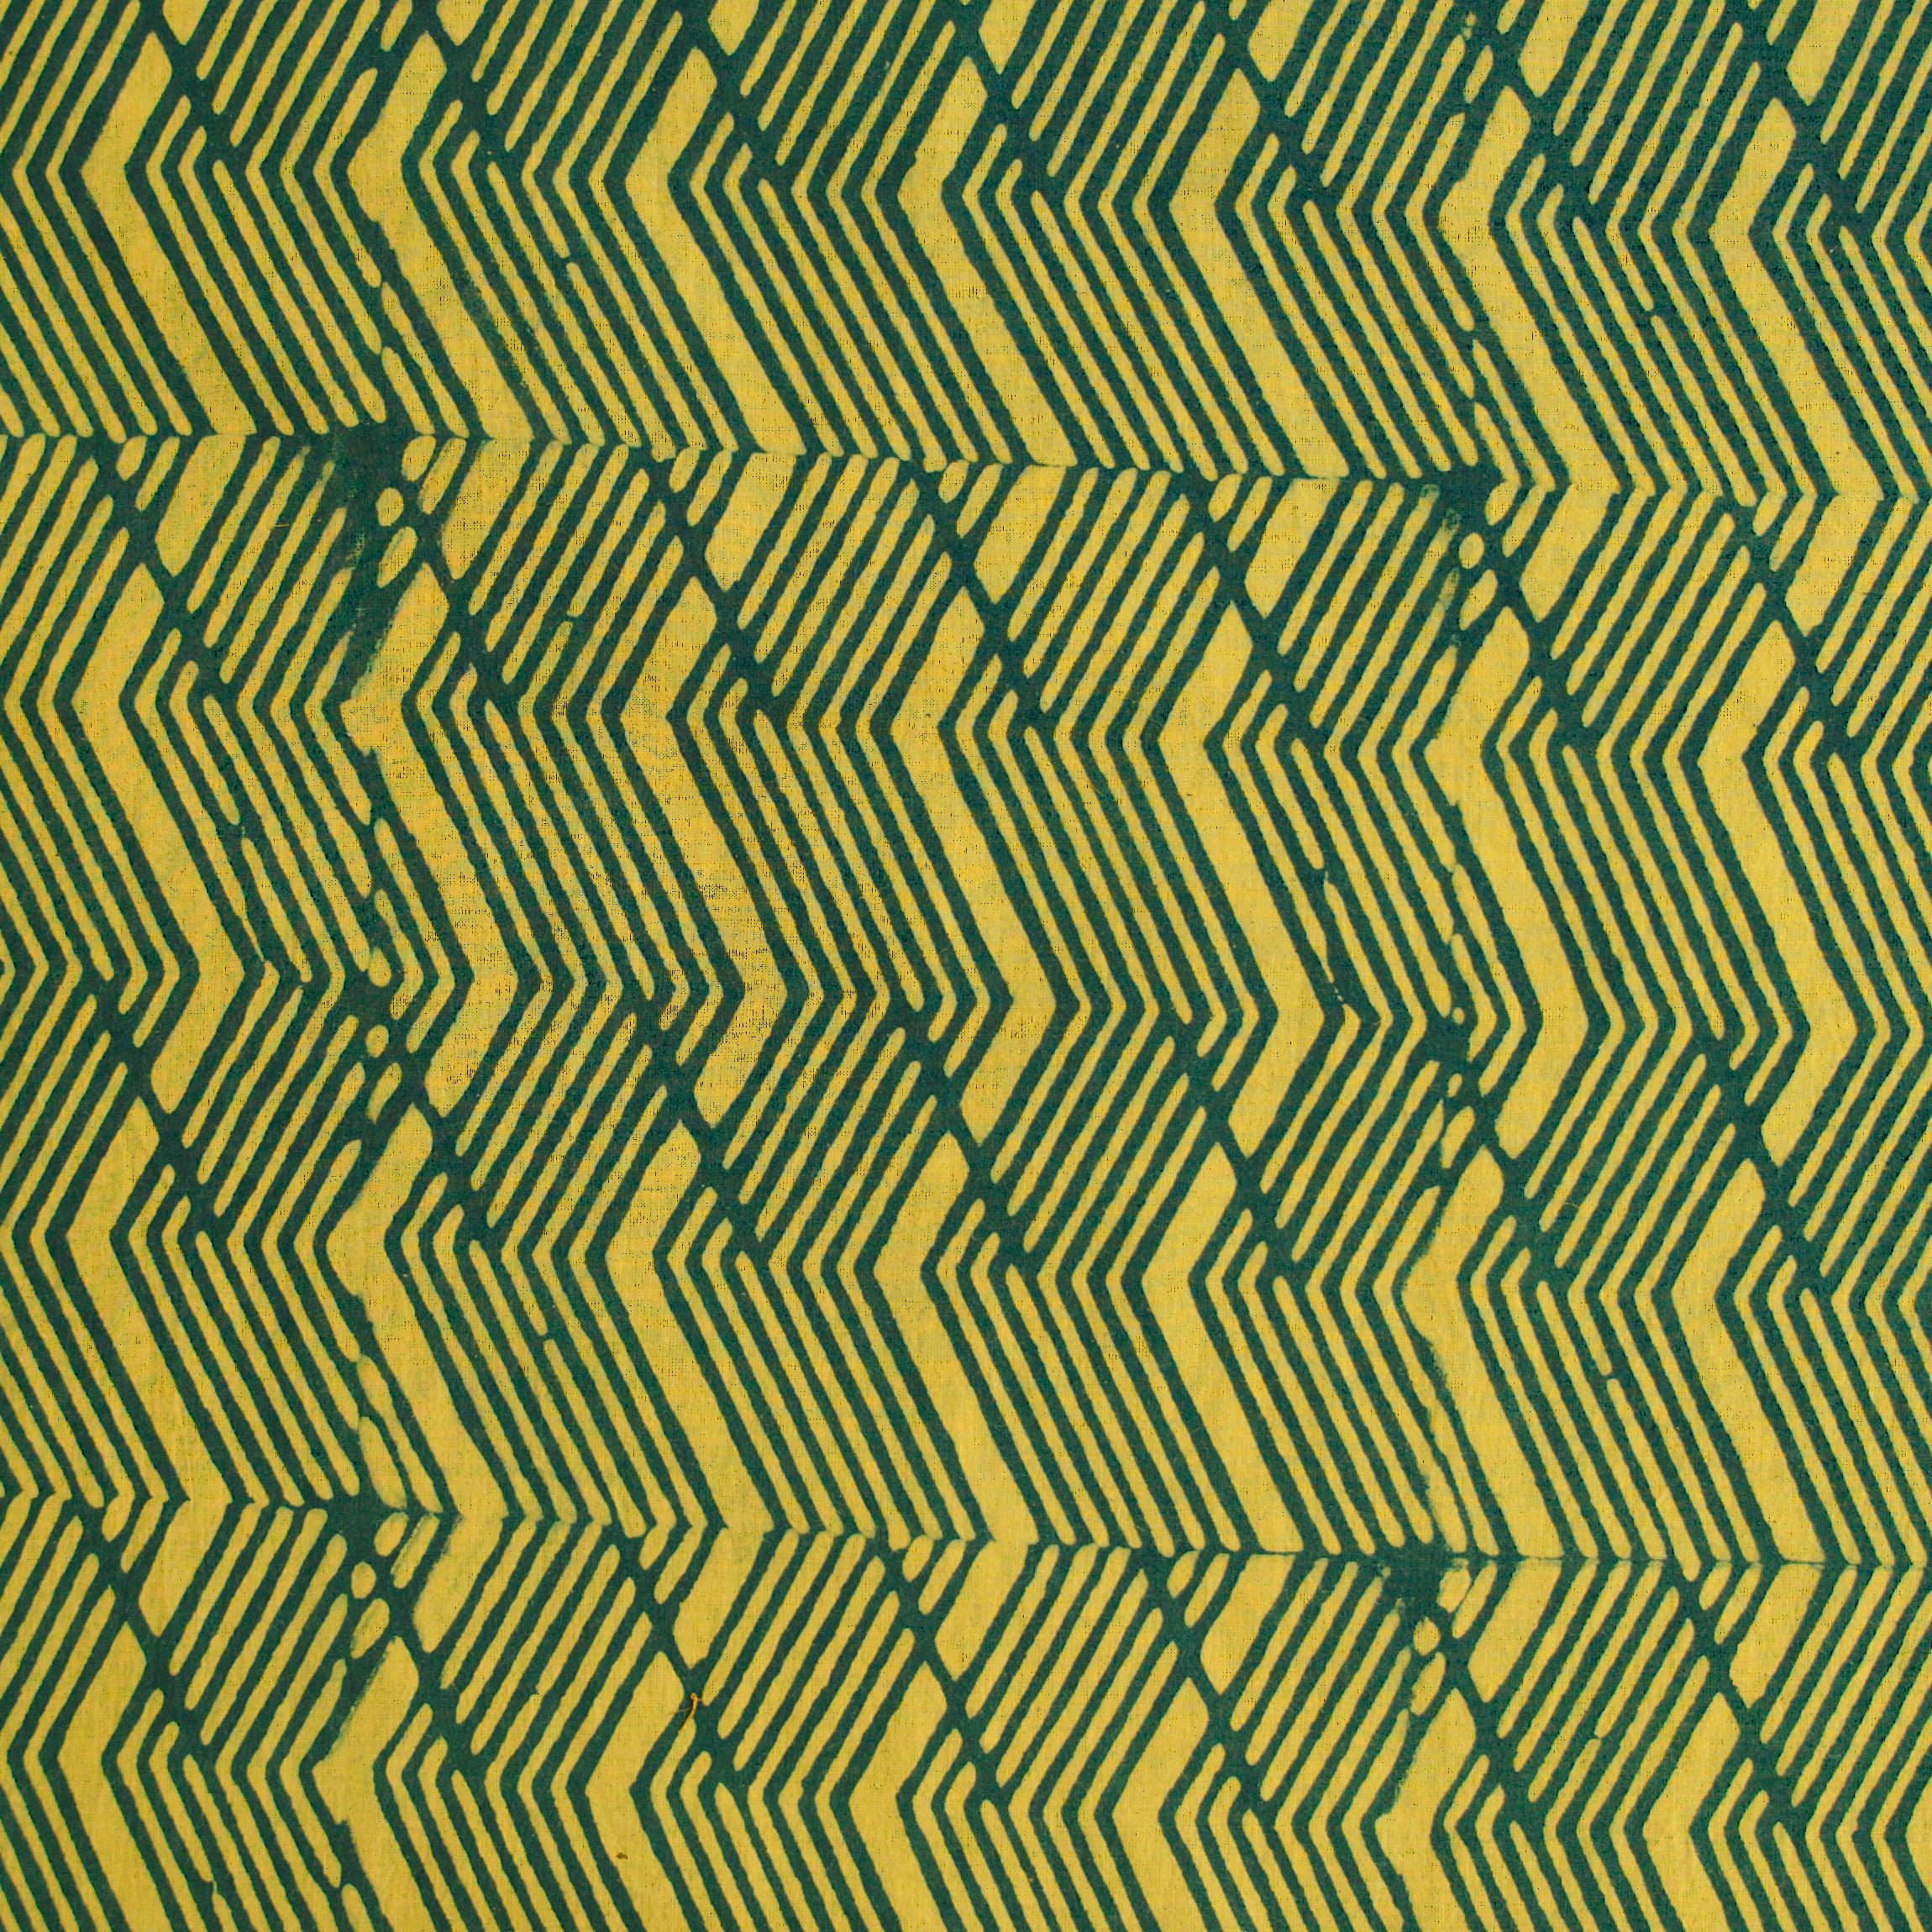 3 - SIK52 - Hand Block-Printed Cotton - Wabisabi Wave Design - Yellow & Green Dye - Flat